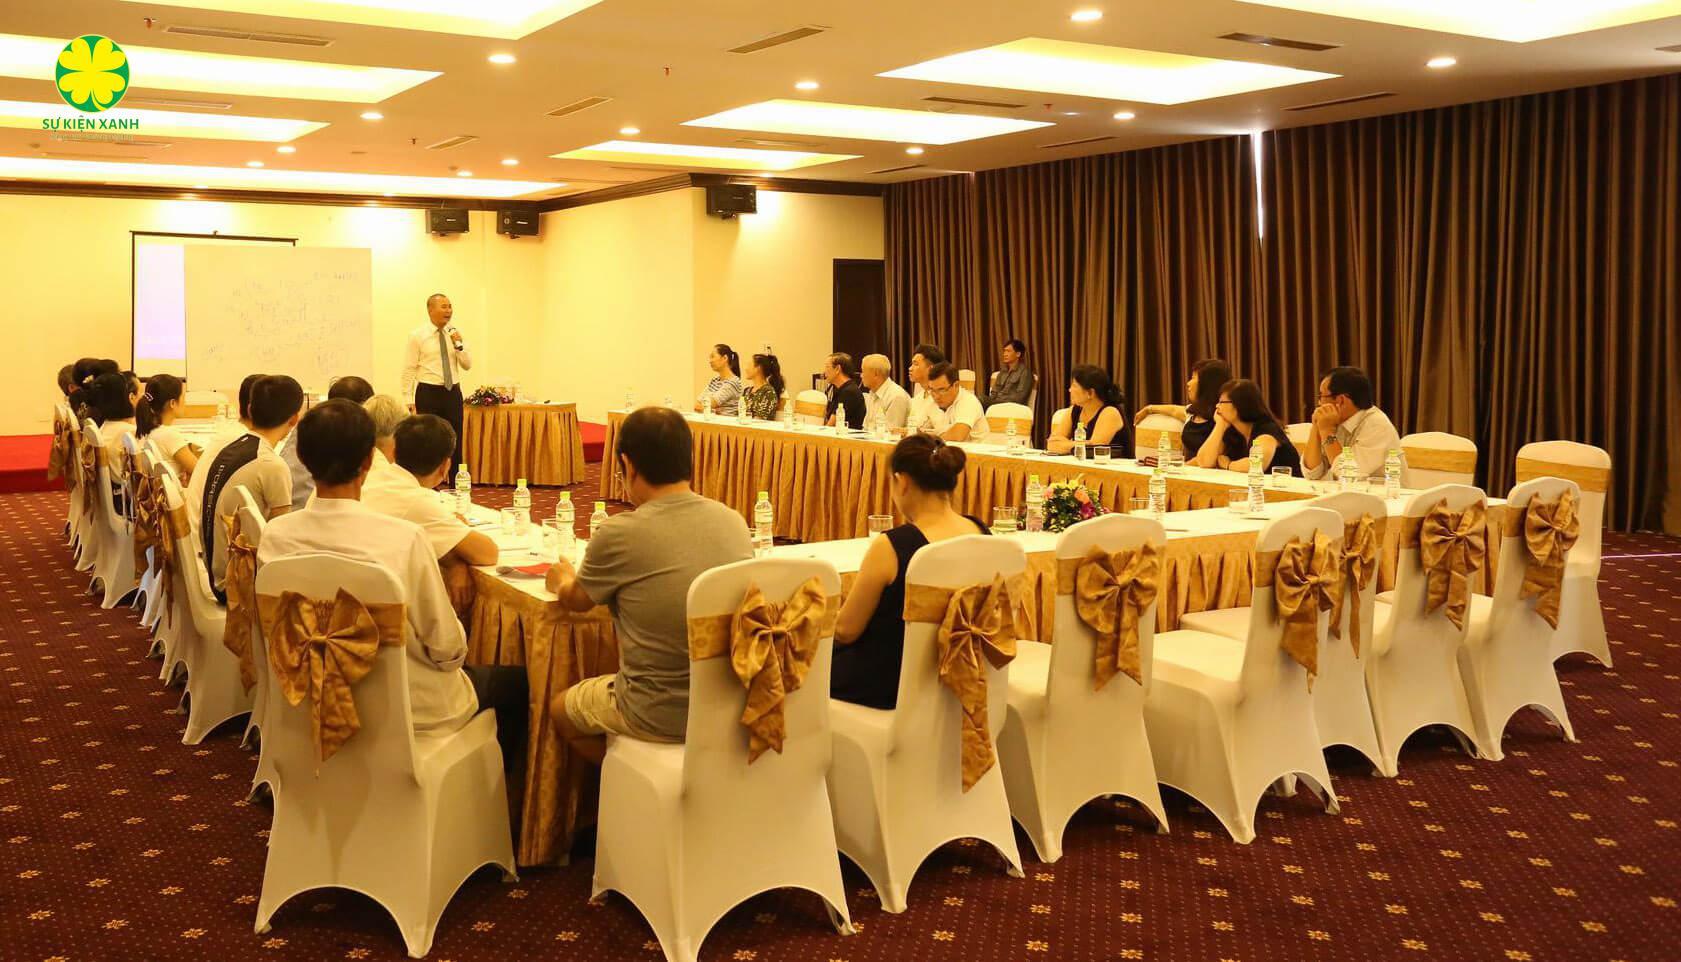 Dịch vụ cho thuê phòng họp hội thảo tại Lai Châu uy tín